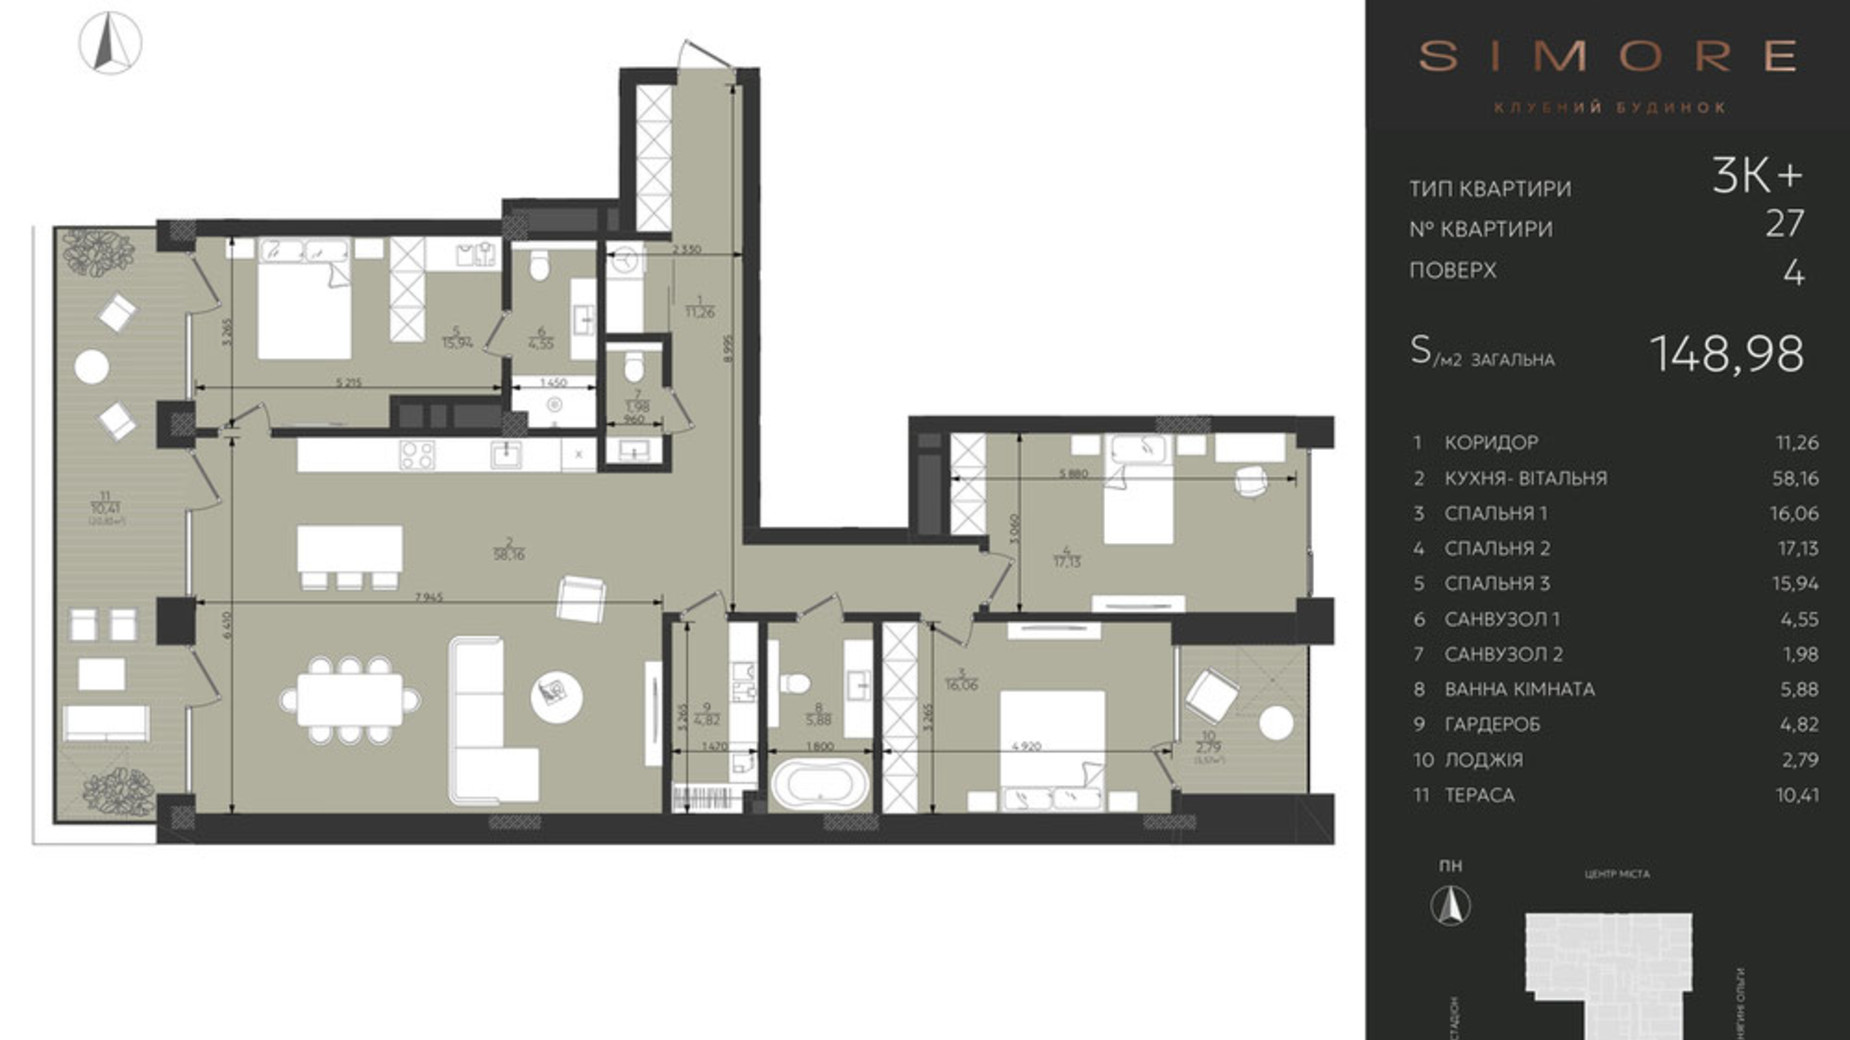 Планування 3-кімнатної квартири в Клубний будинок Simore 148.98 м², фото 694207